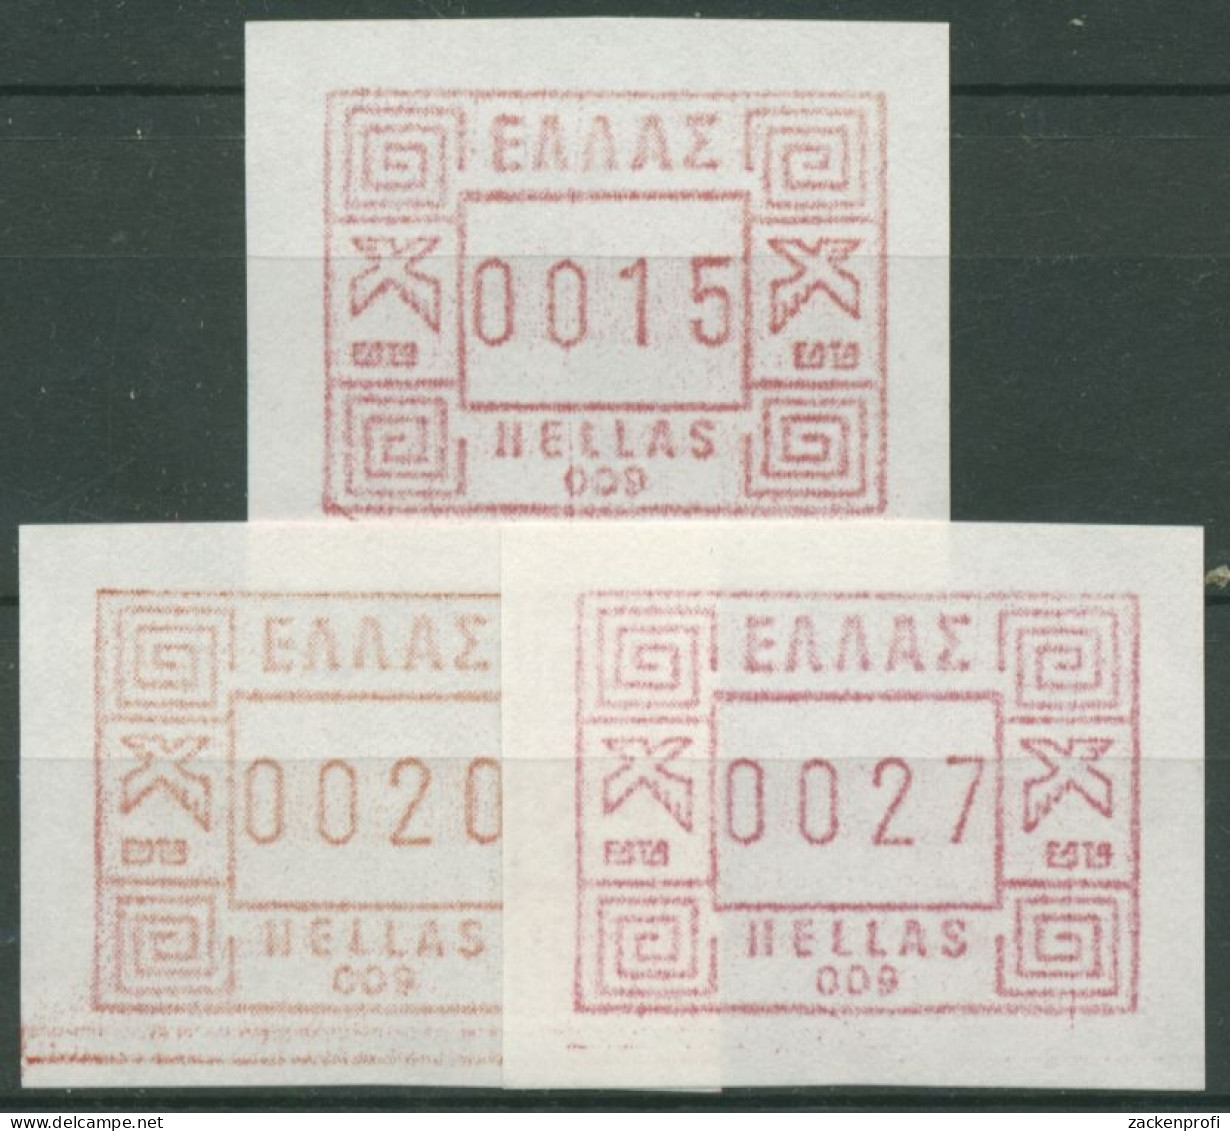 Griechenland 1984 Automatenmarken Wert Automatennummern ATM 1 S1 Postfrisch - Timbres De Distributeurs [ATM]